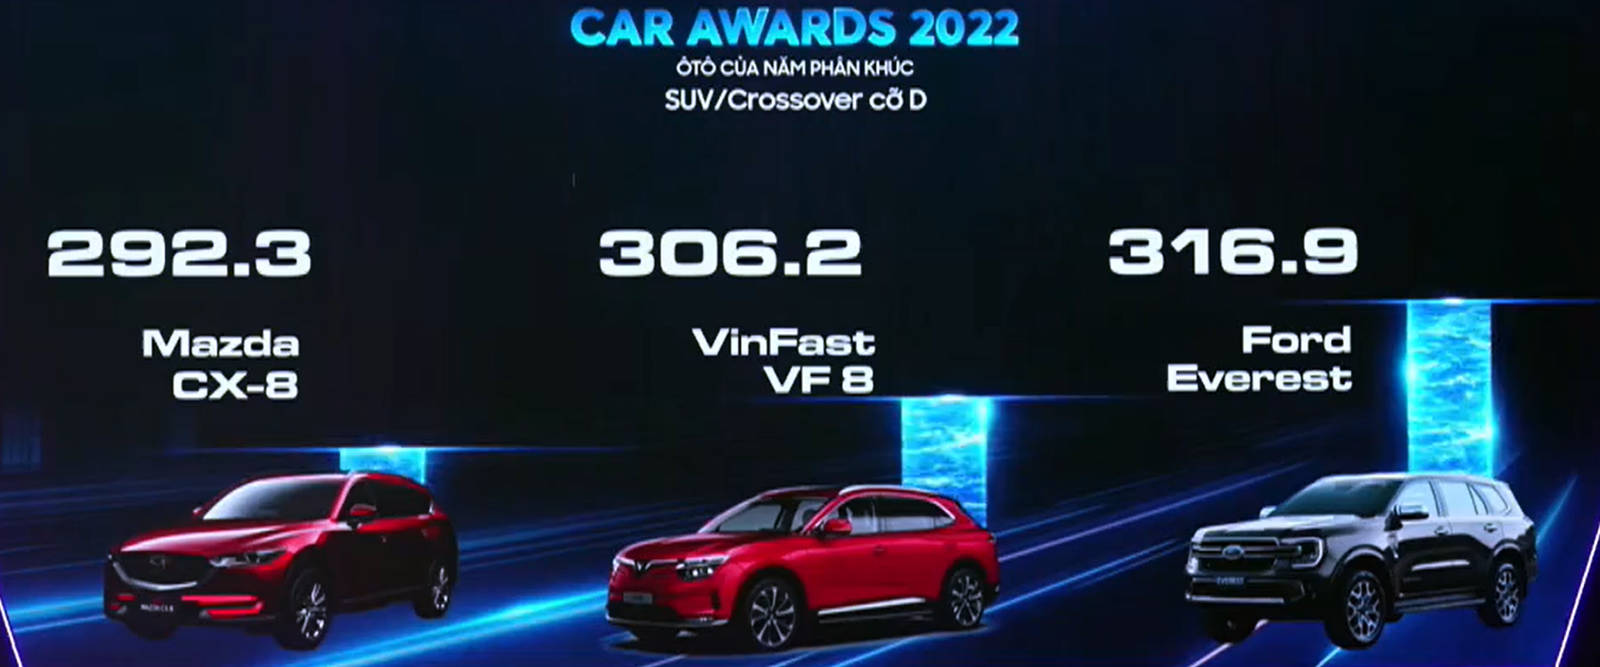 car-awards2022-03.jpg